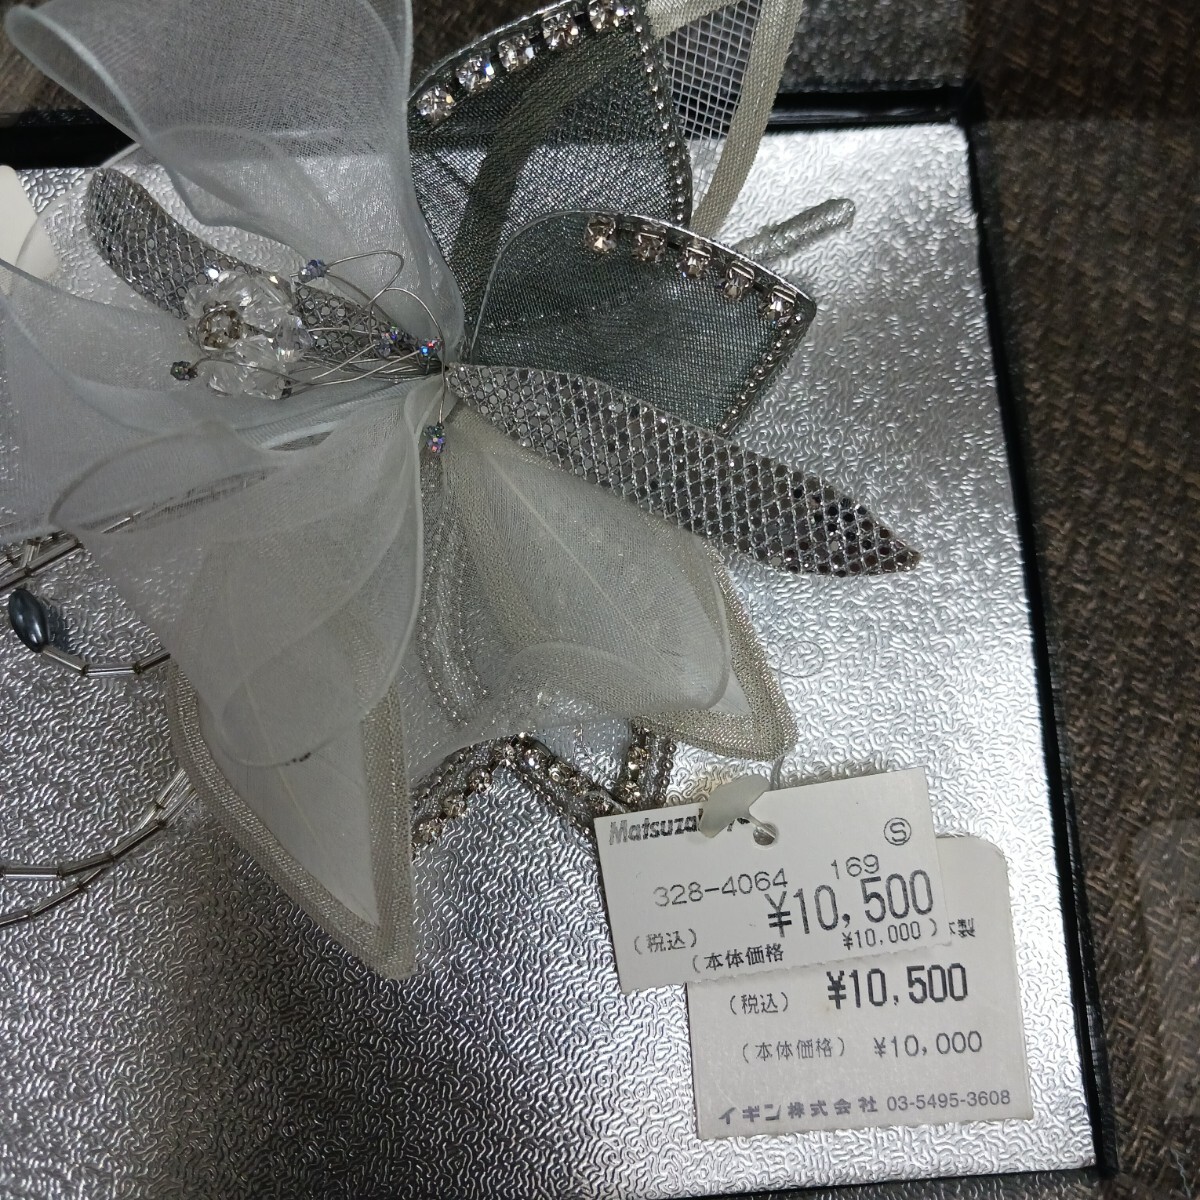  букетик Tokyo igin формальный обычная цена 10500 иен брошь 